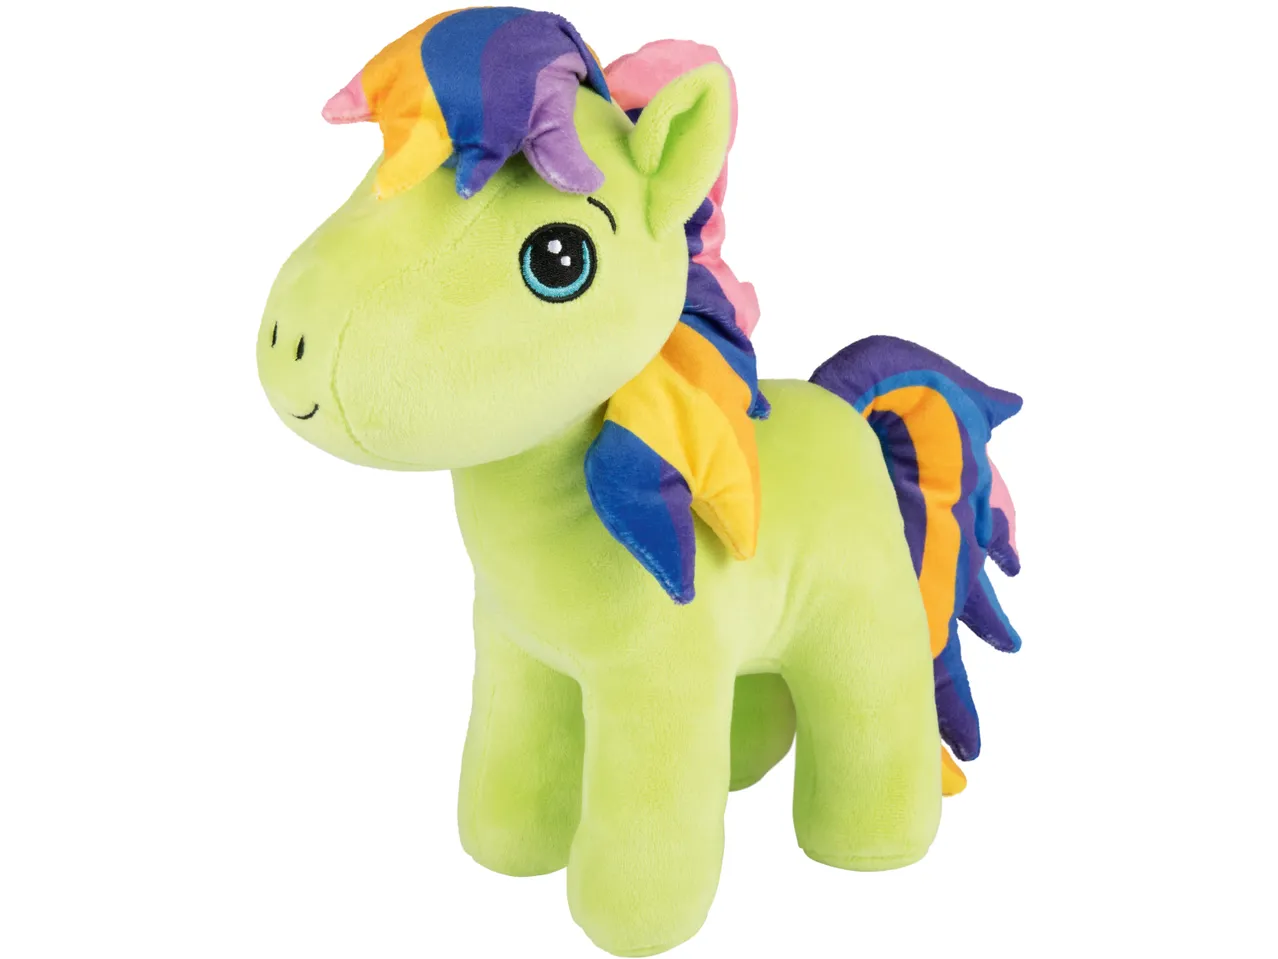 Peluche Pony , prezzo 5,99 EUR 
Peluche Pony 
- In diversi assortimenti
- Et&agrave; ...